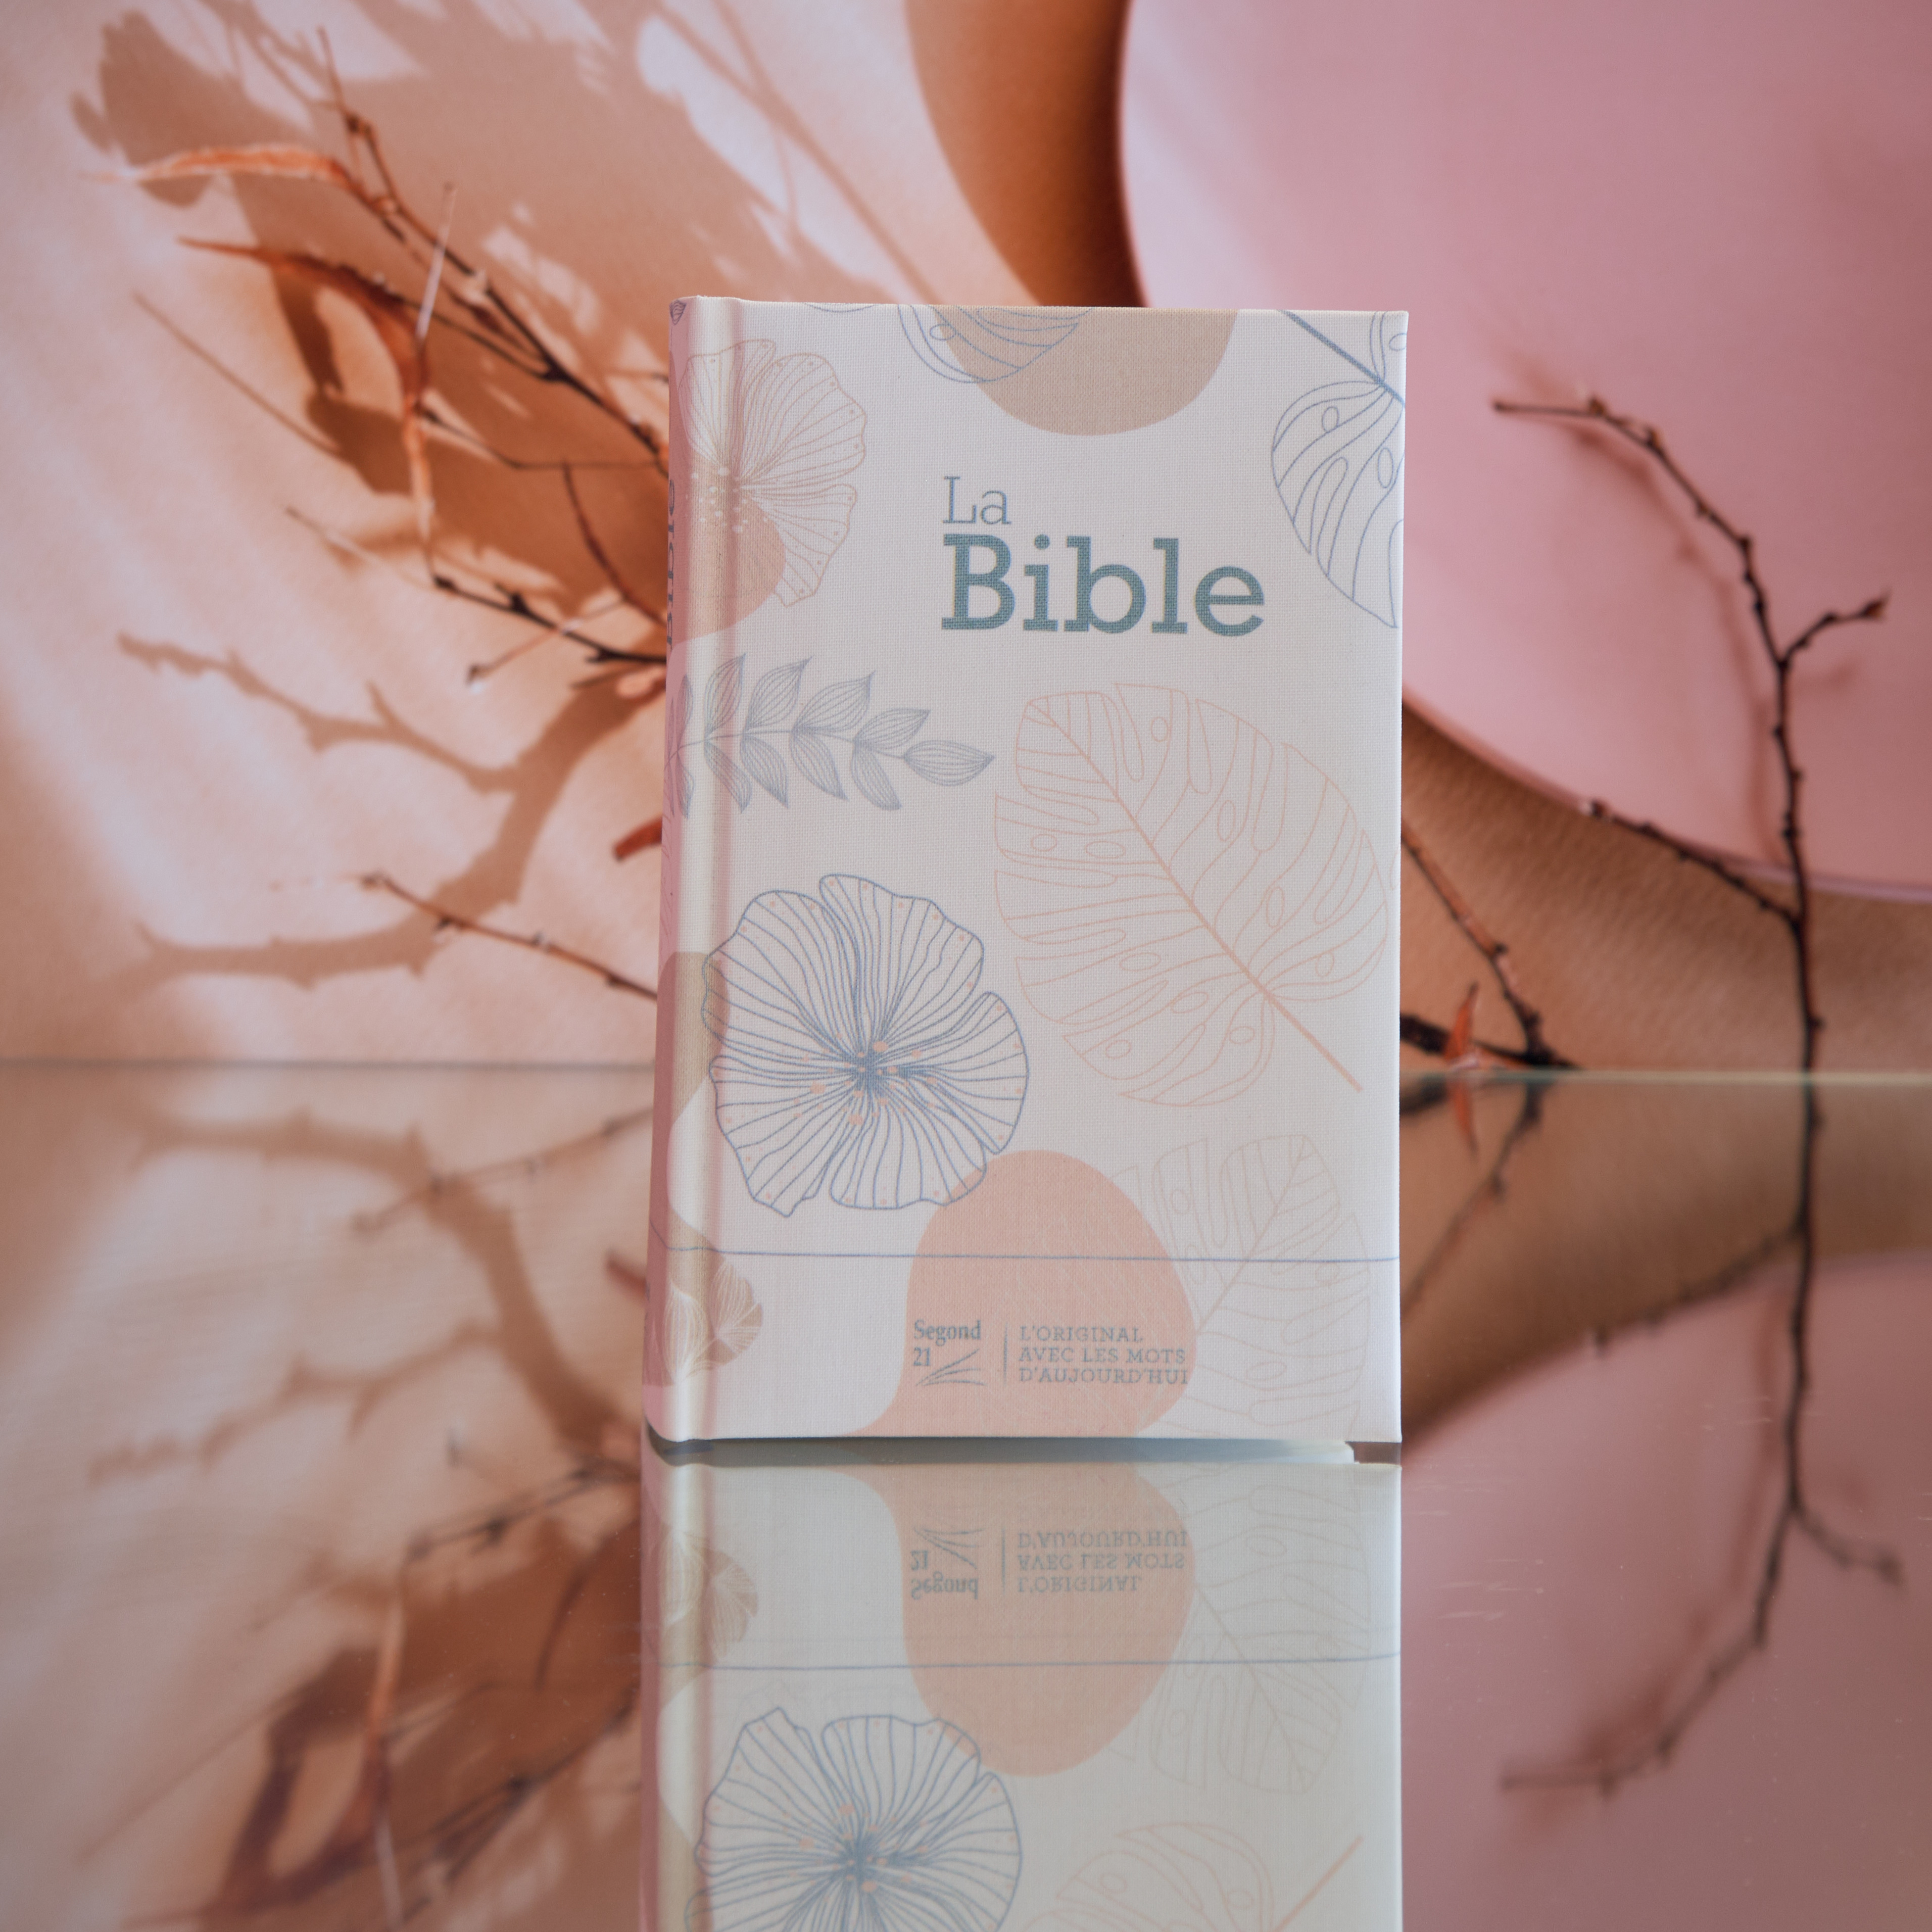 Bible Segond 21 compacte (Premium Style) - couverture rigide  toilée matelassée motif feuilles